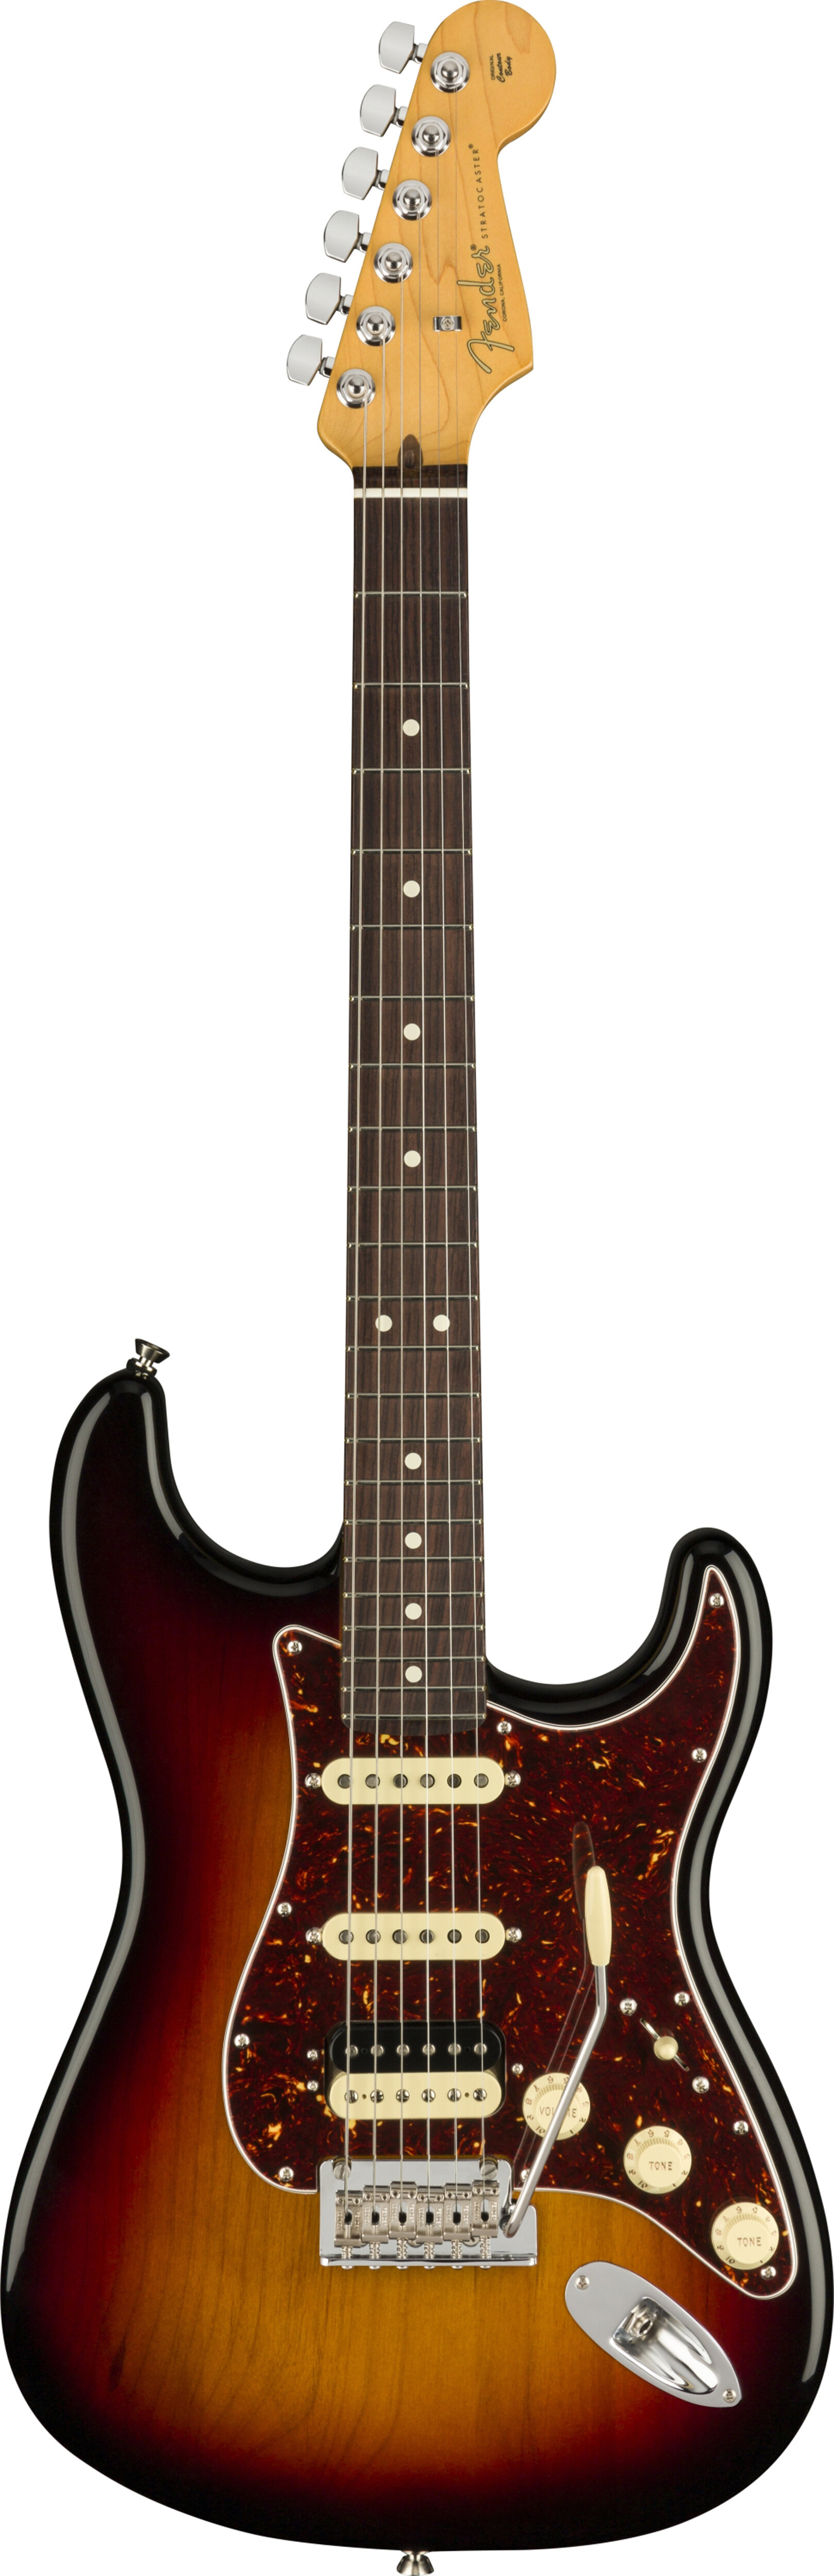 Fender 0113910700